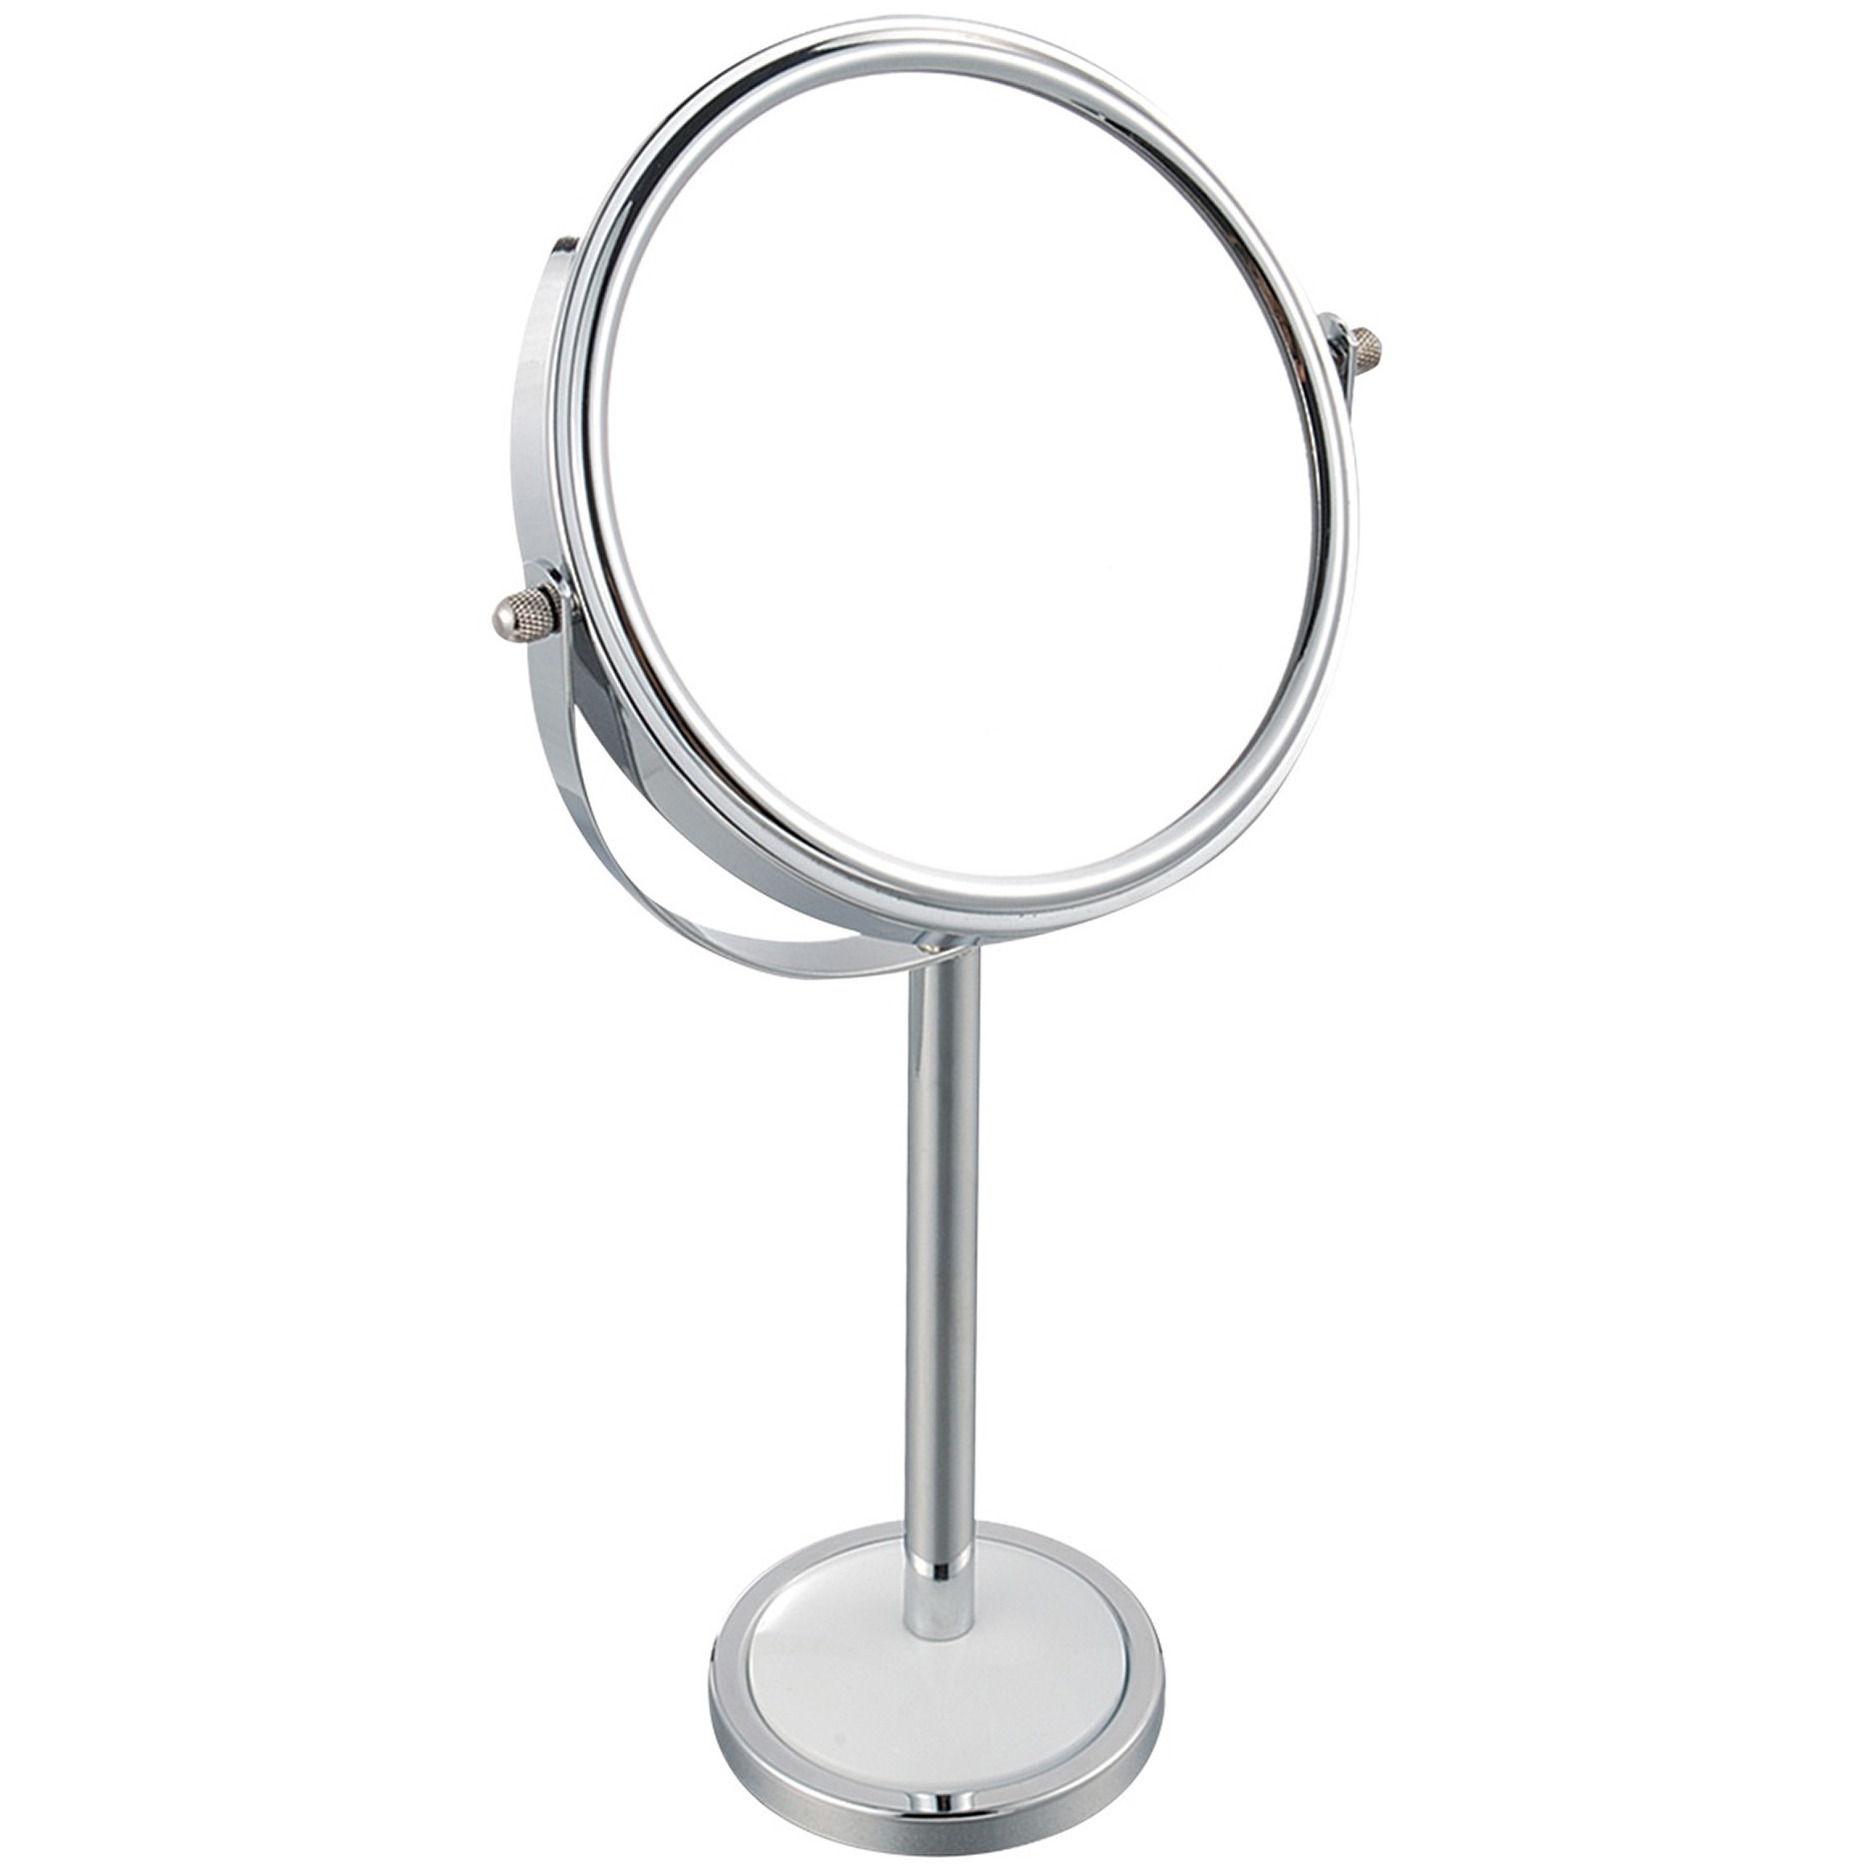 MSV Make-up spiegel - 2-zijdig - op stevige voet - chrome zilver - 15 x 16 cm -